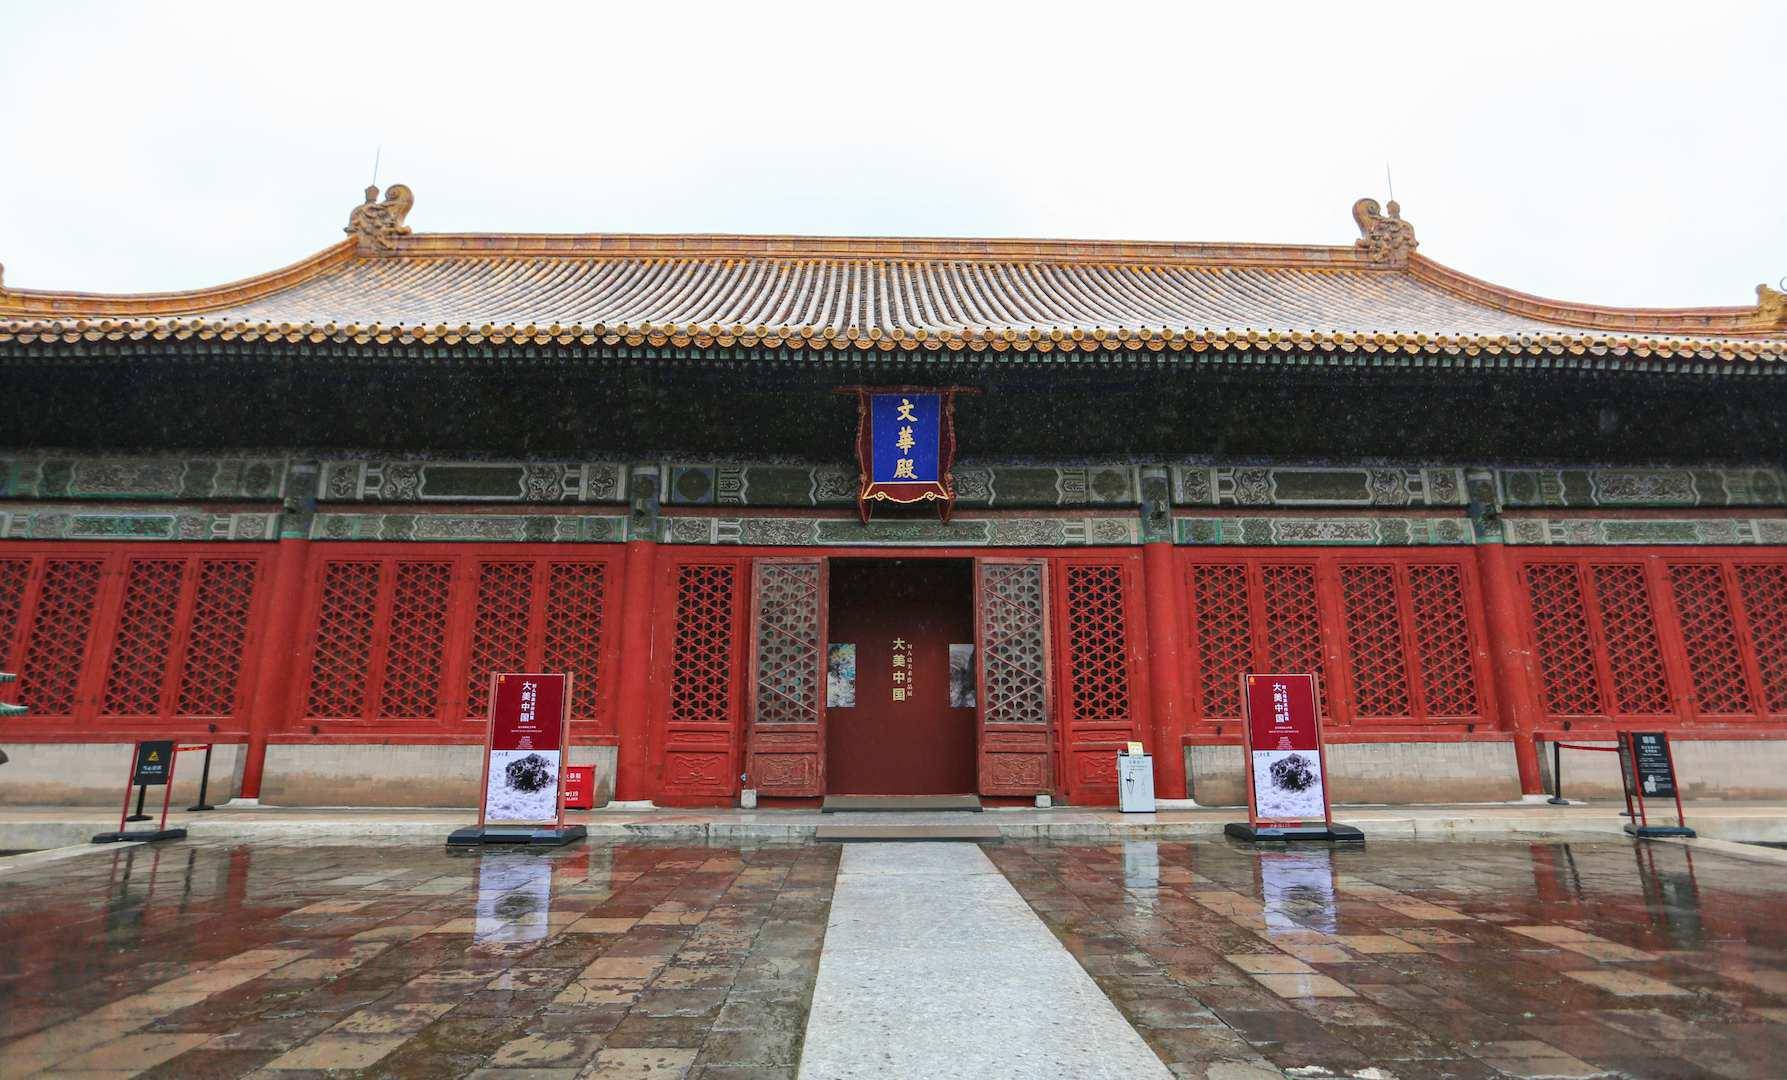 大美中国刘人岛美术作品展于故宫文华殿开幕展出